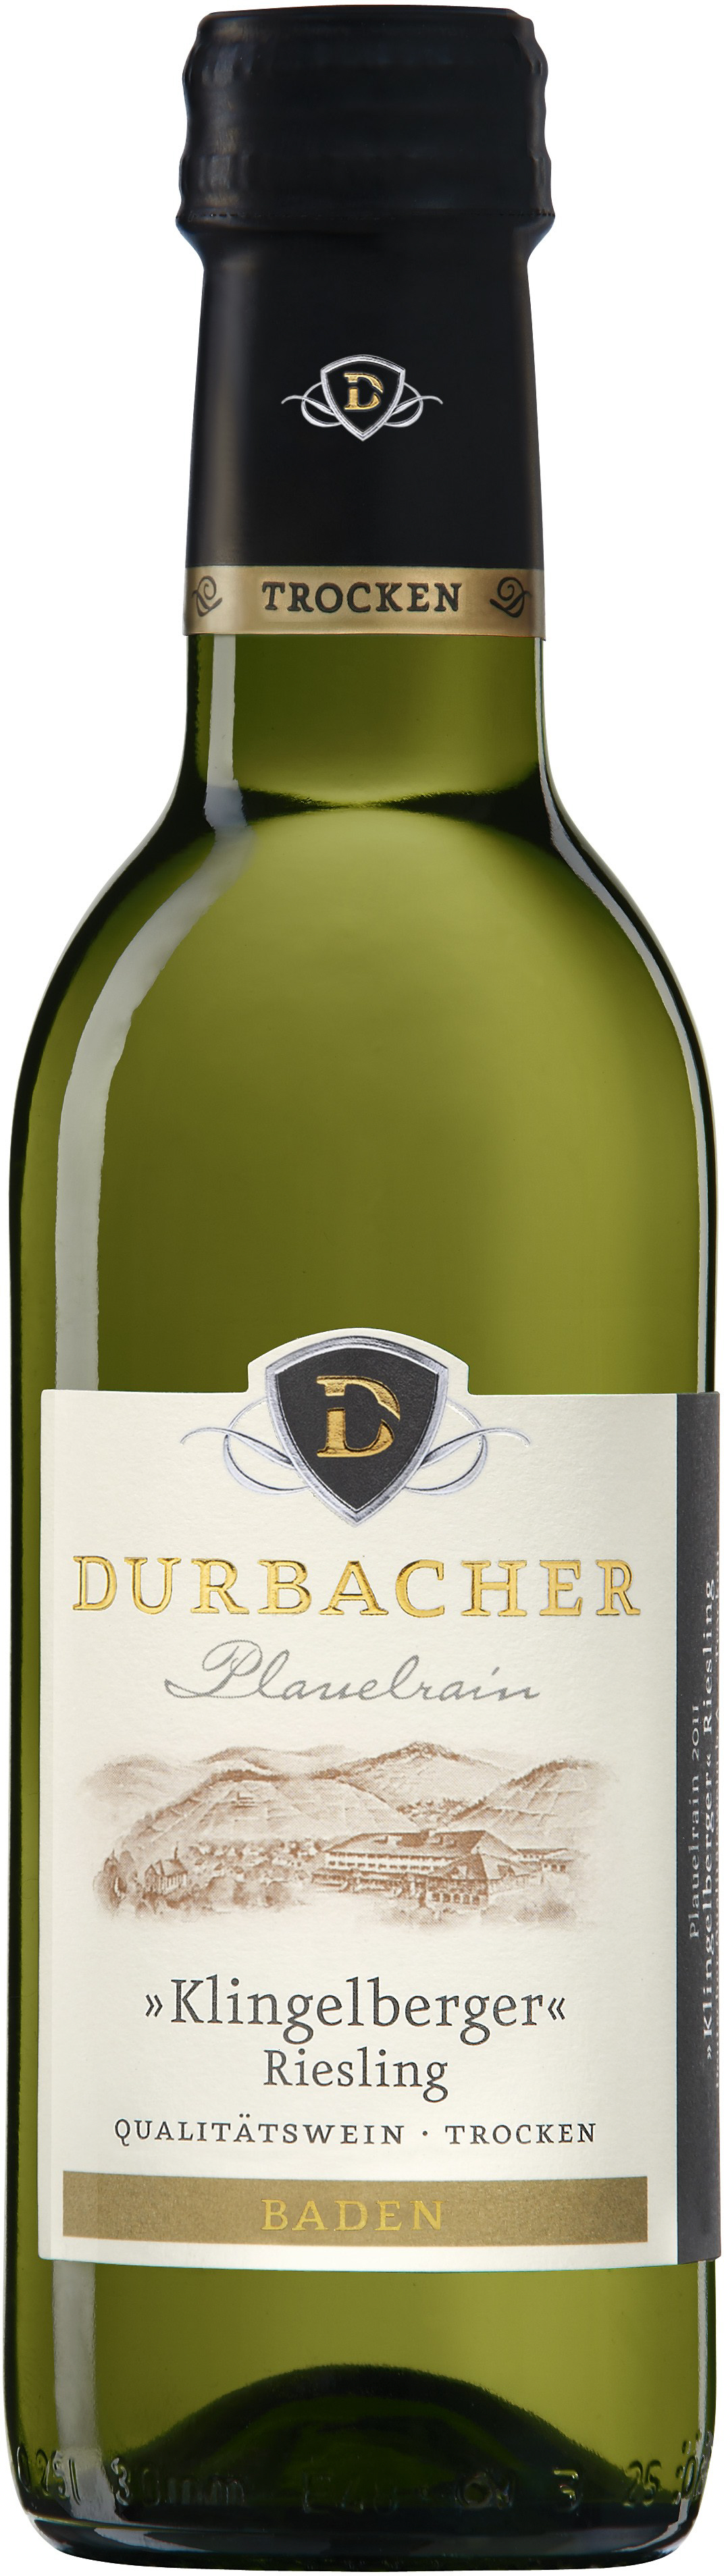 Durbacher Plauelrain Klingelberger (Riesling) Qualitätswein